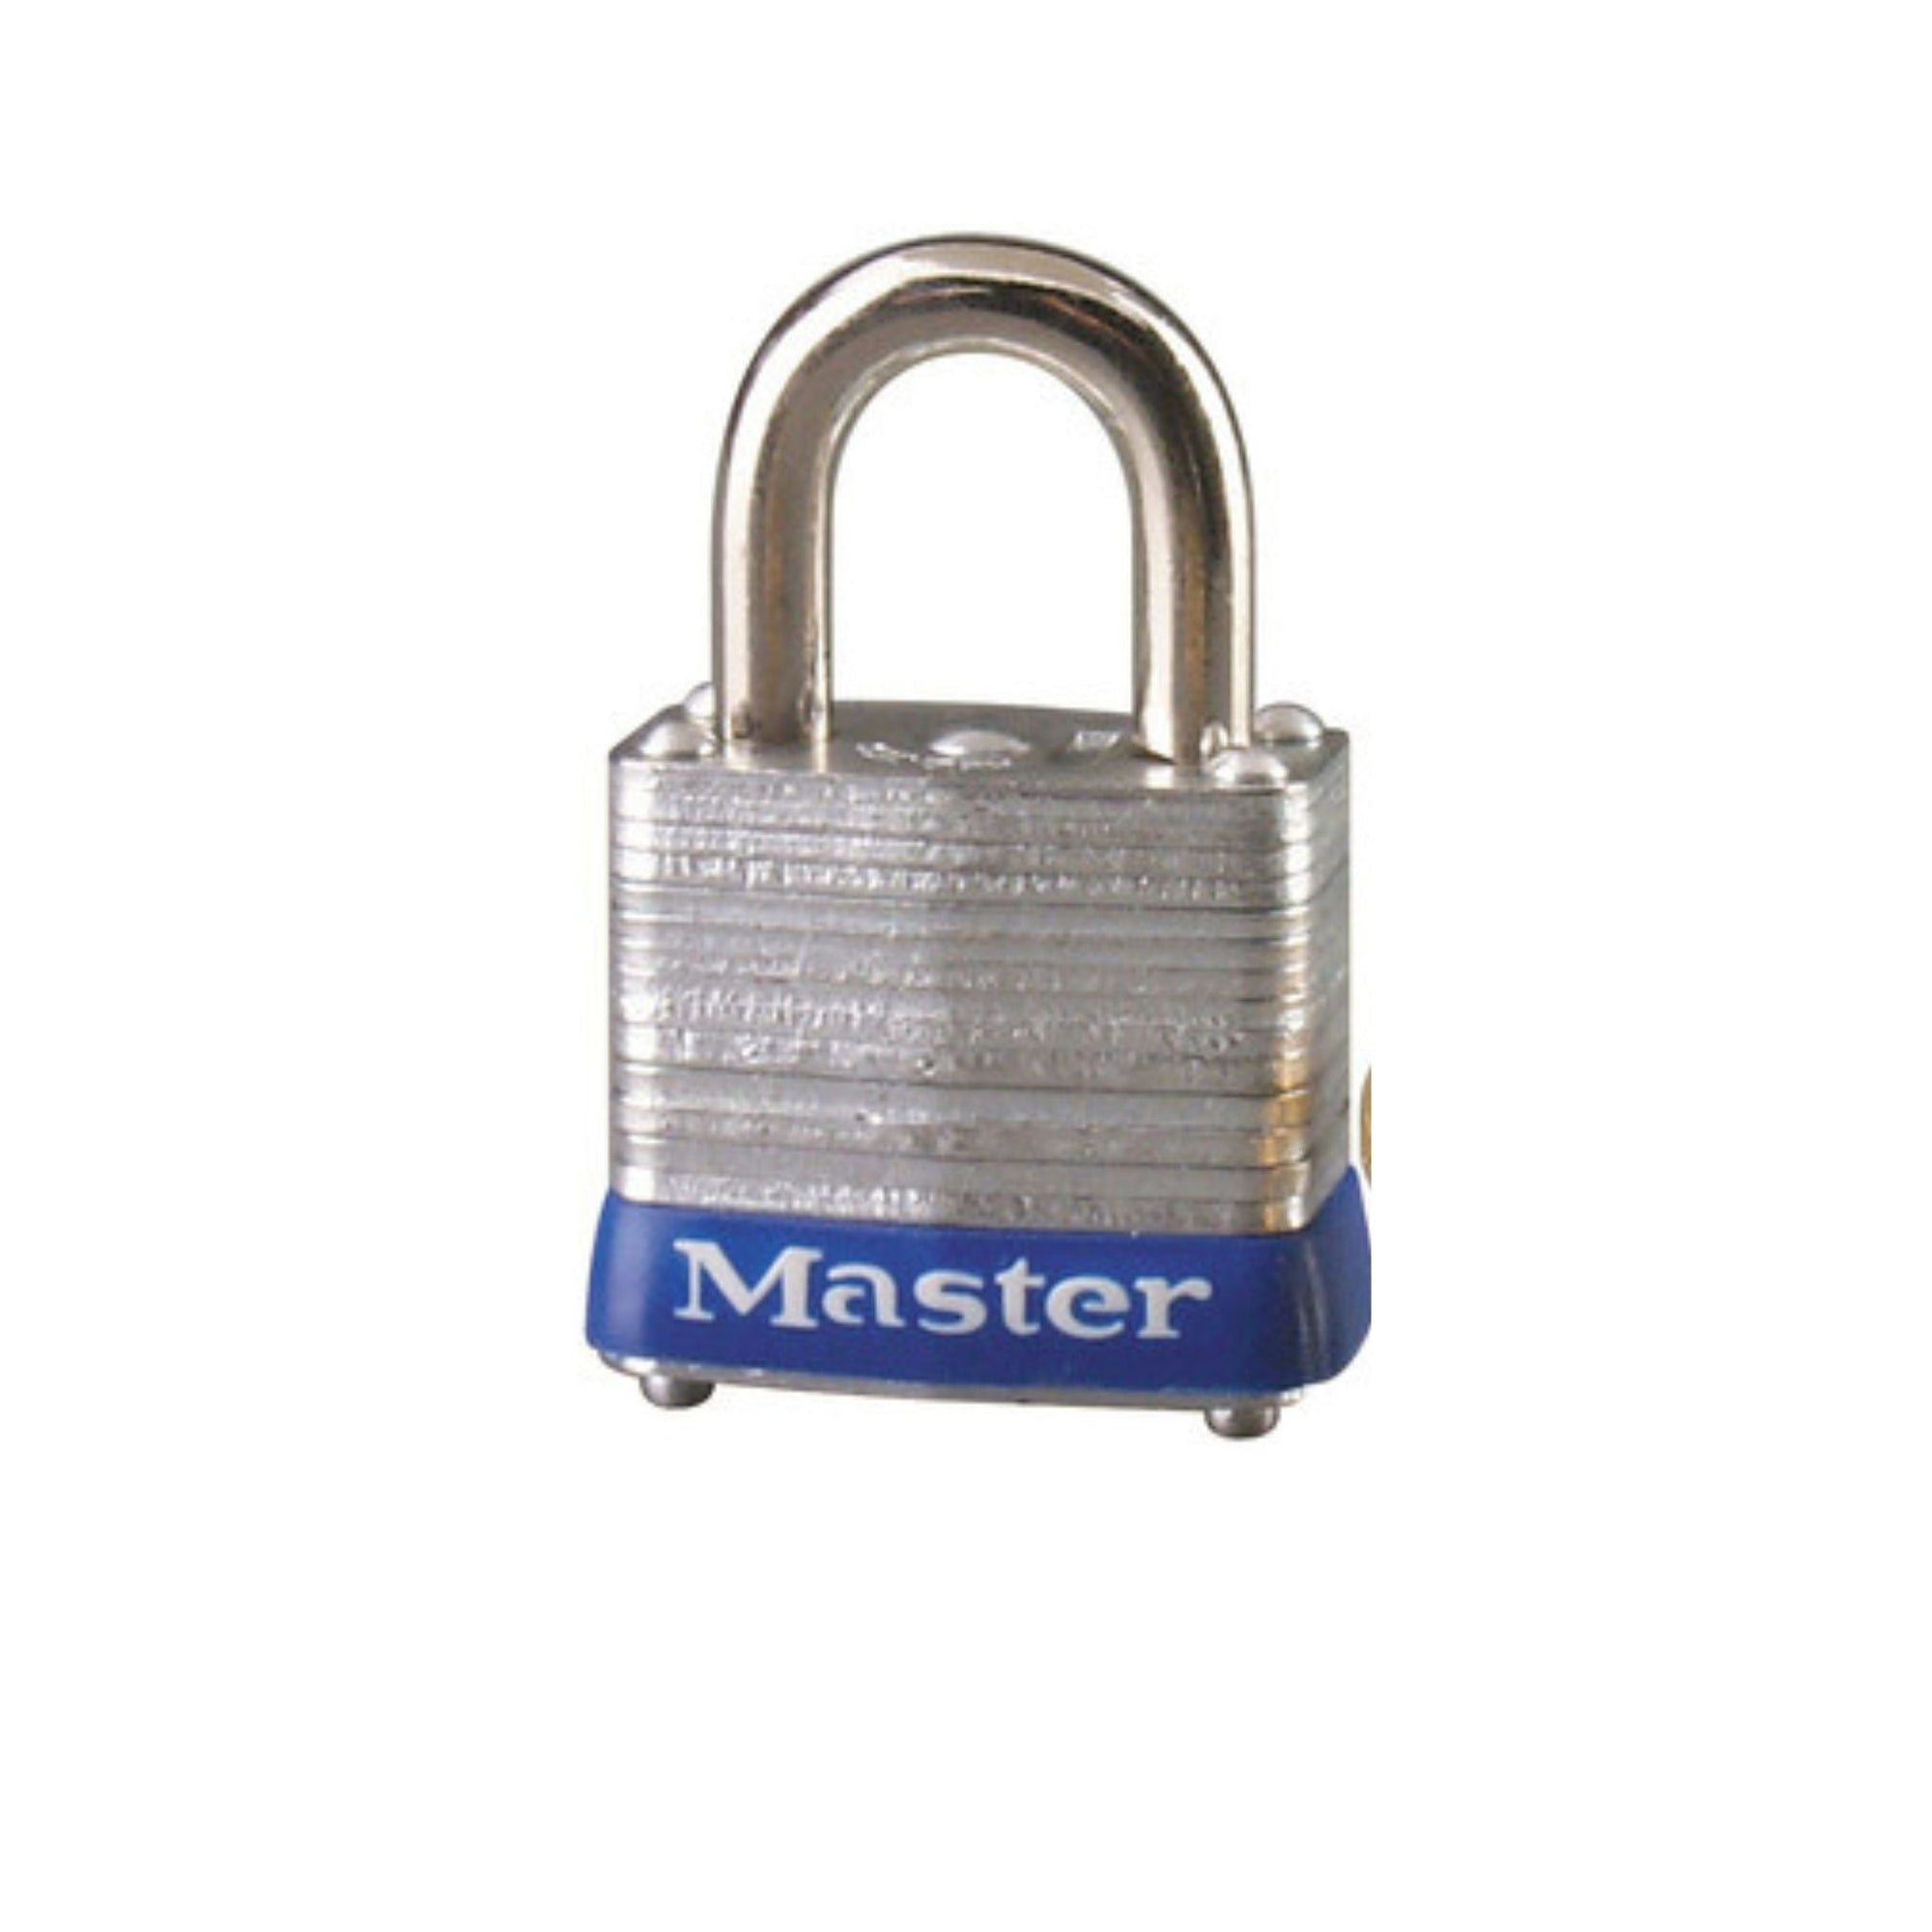 Master Lock 7KA P119 Lock Laminated steel No. 7 Series Padlock Keyed to Match Existing Key Number KAP119 - The Lock Source